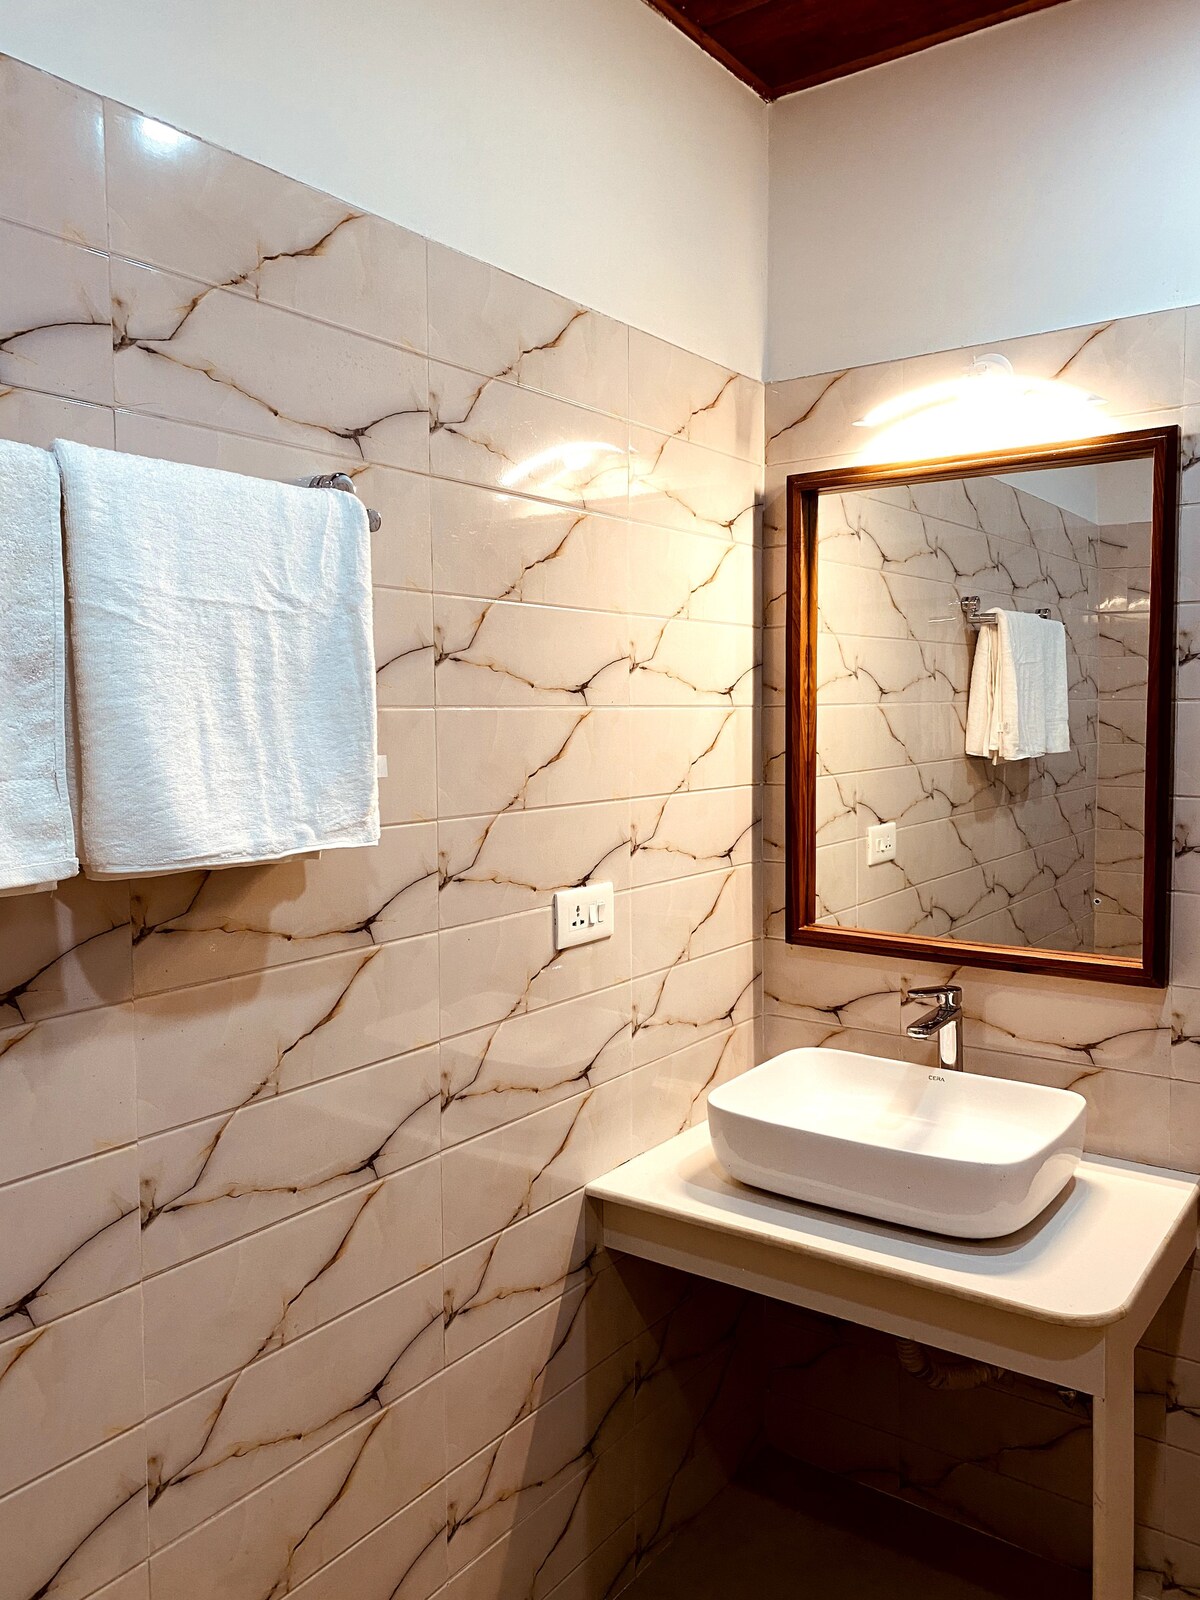 「公寓」- 3间带浴室的现代化客房。